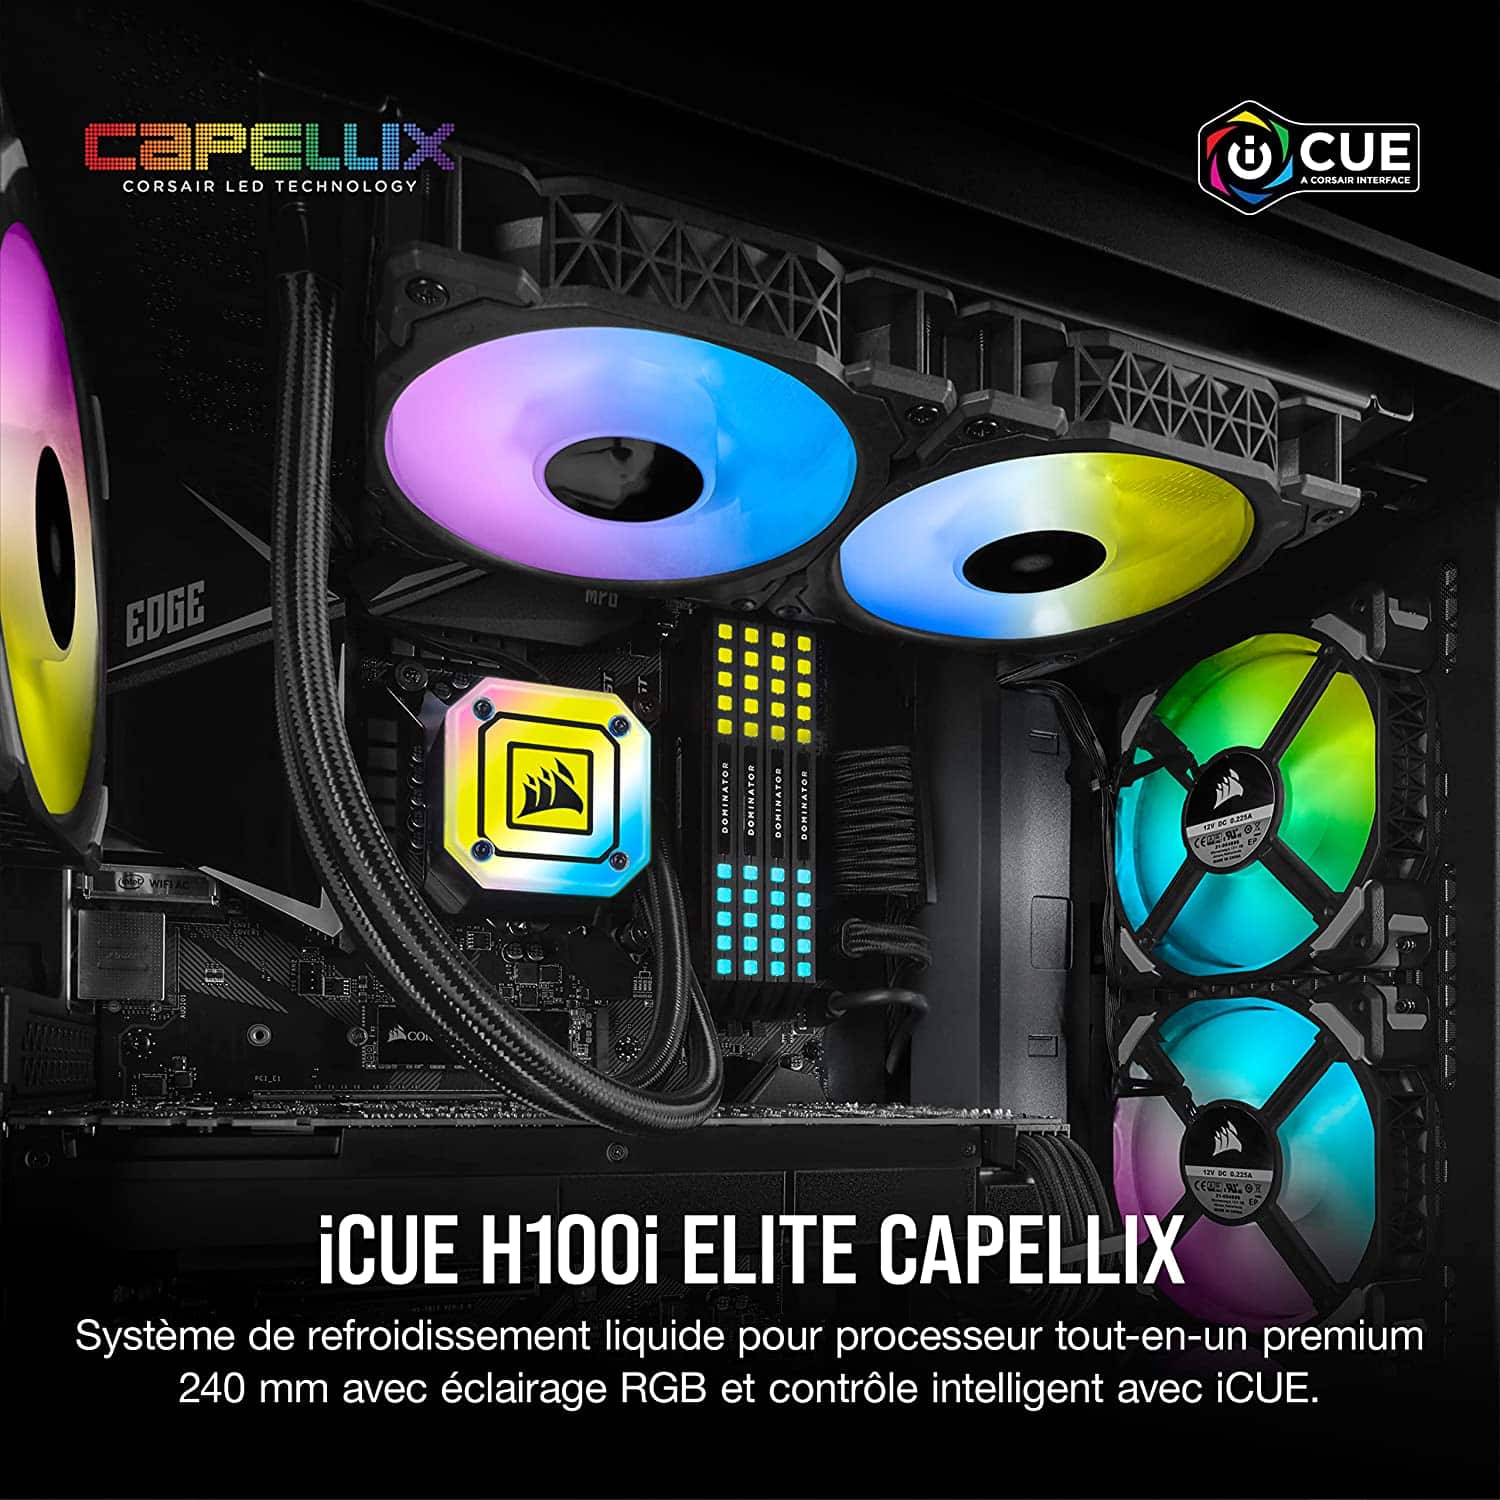 Corsair iCUE H100i ELITE CAPELLIX Liquid CPU Cooler